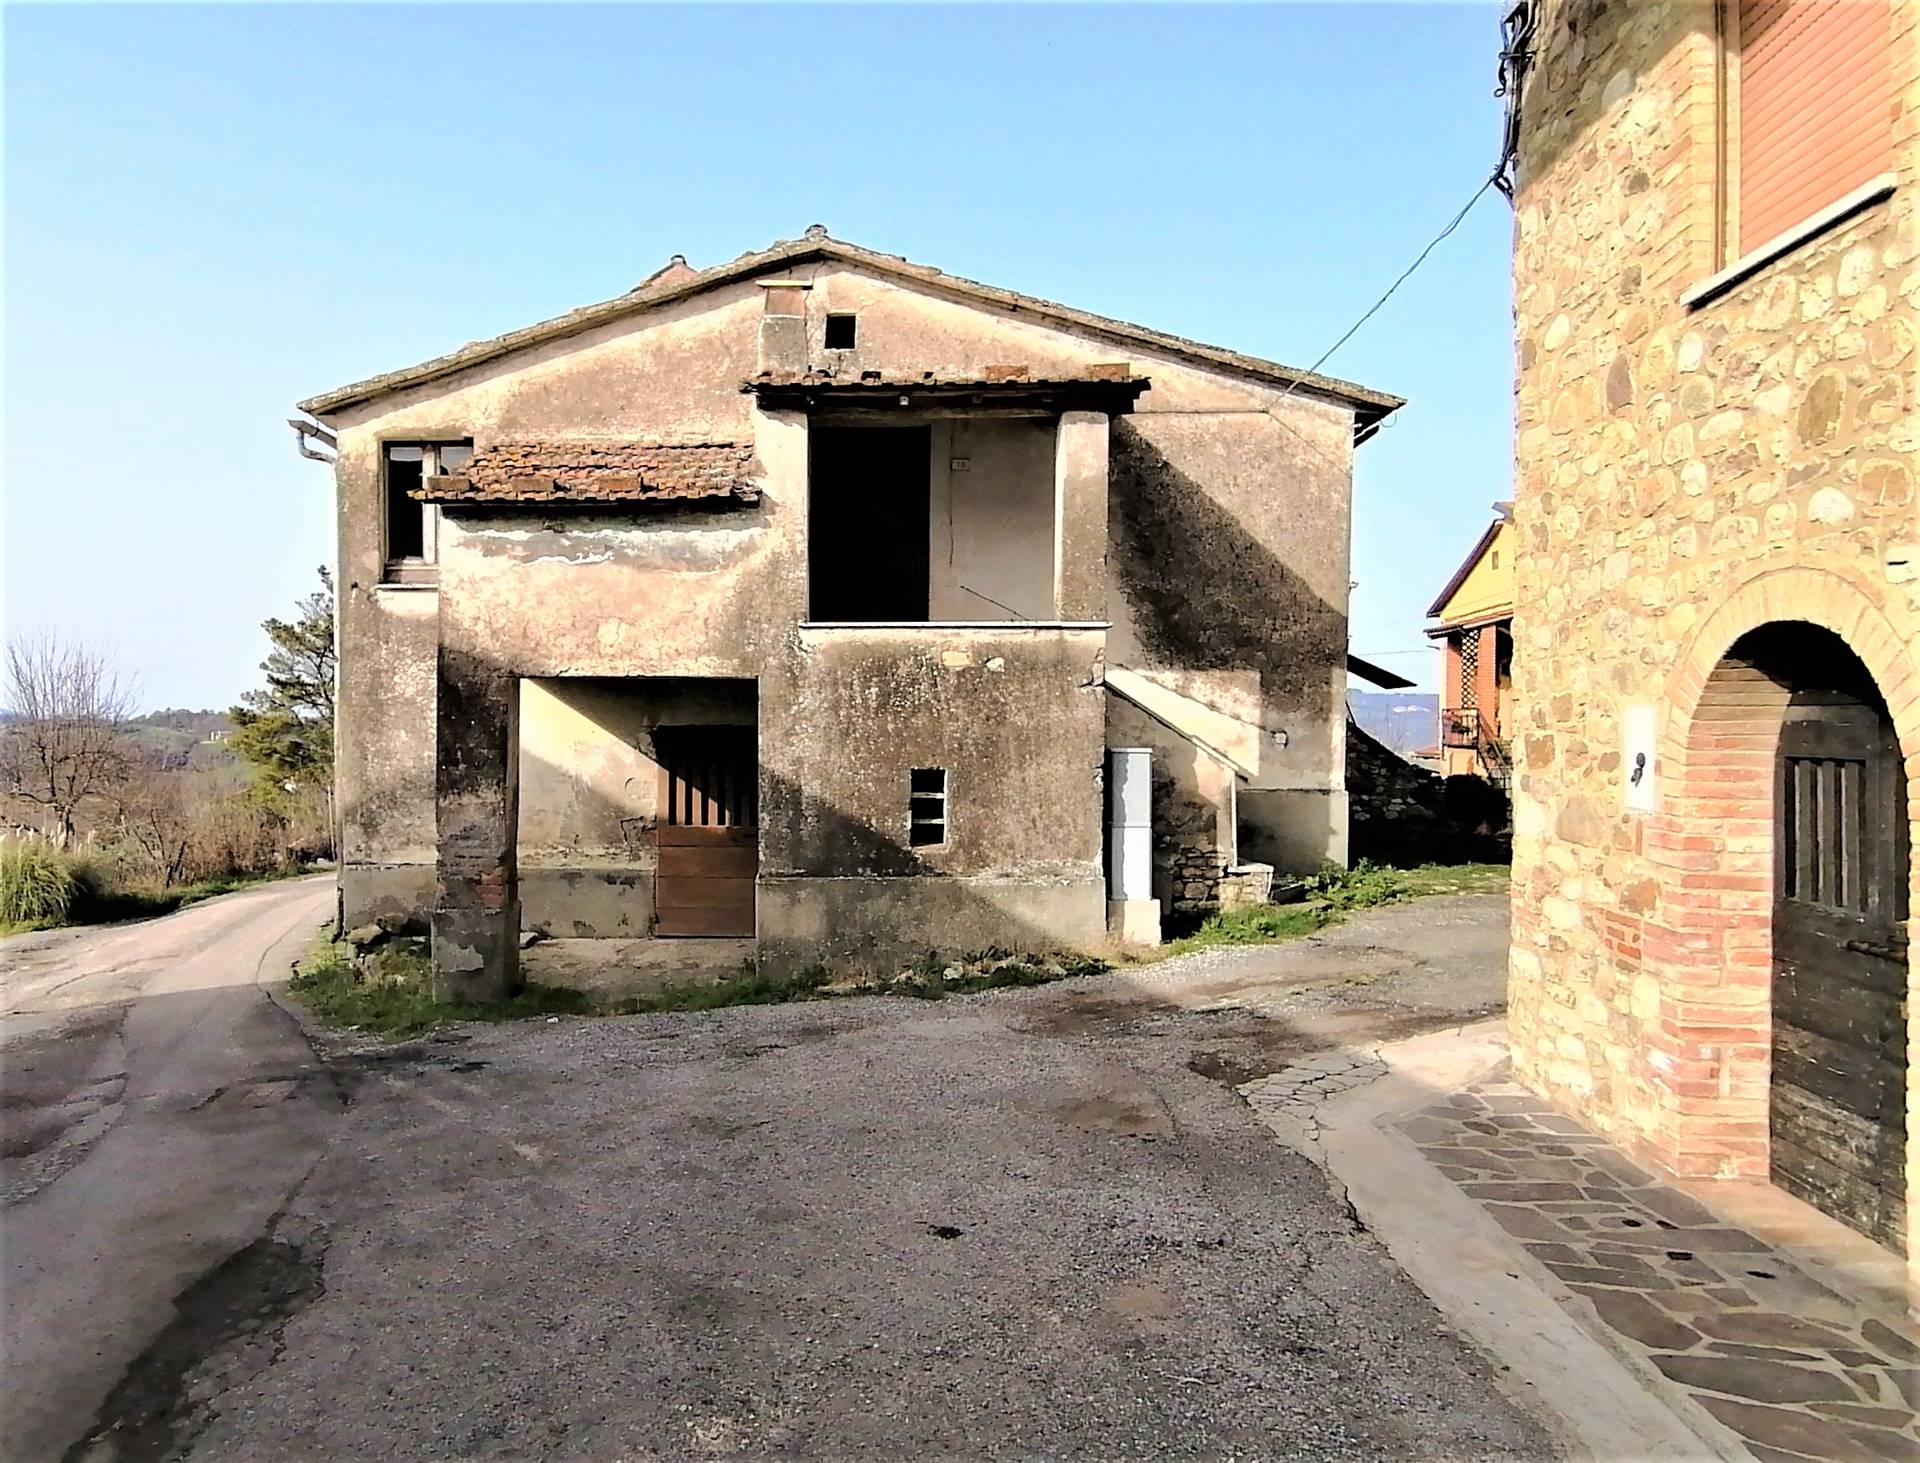 Rustico / Casale in vendita a Fabro, 5 locali, zona Località: COLONETTA, prezzo € 60.000 | CambioCasa.it